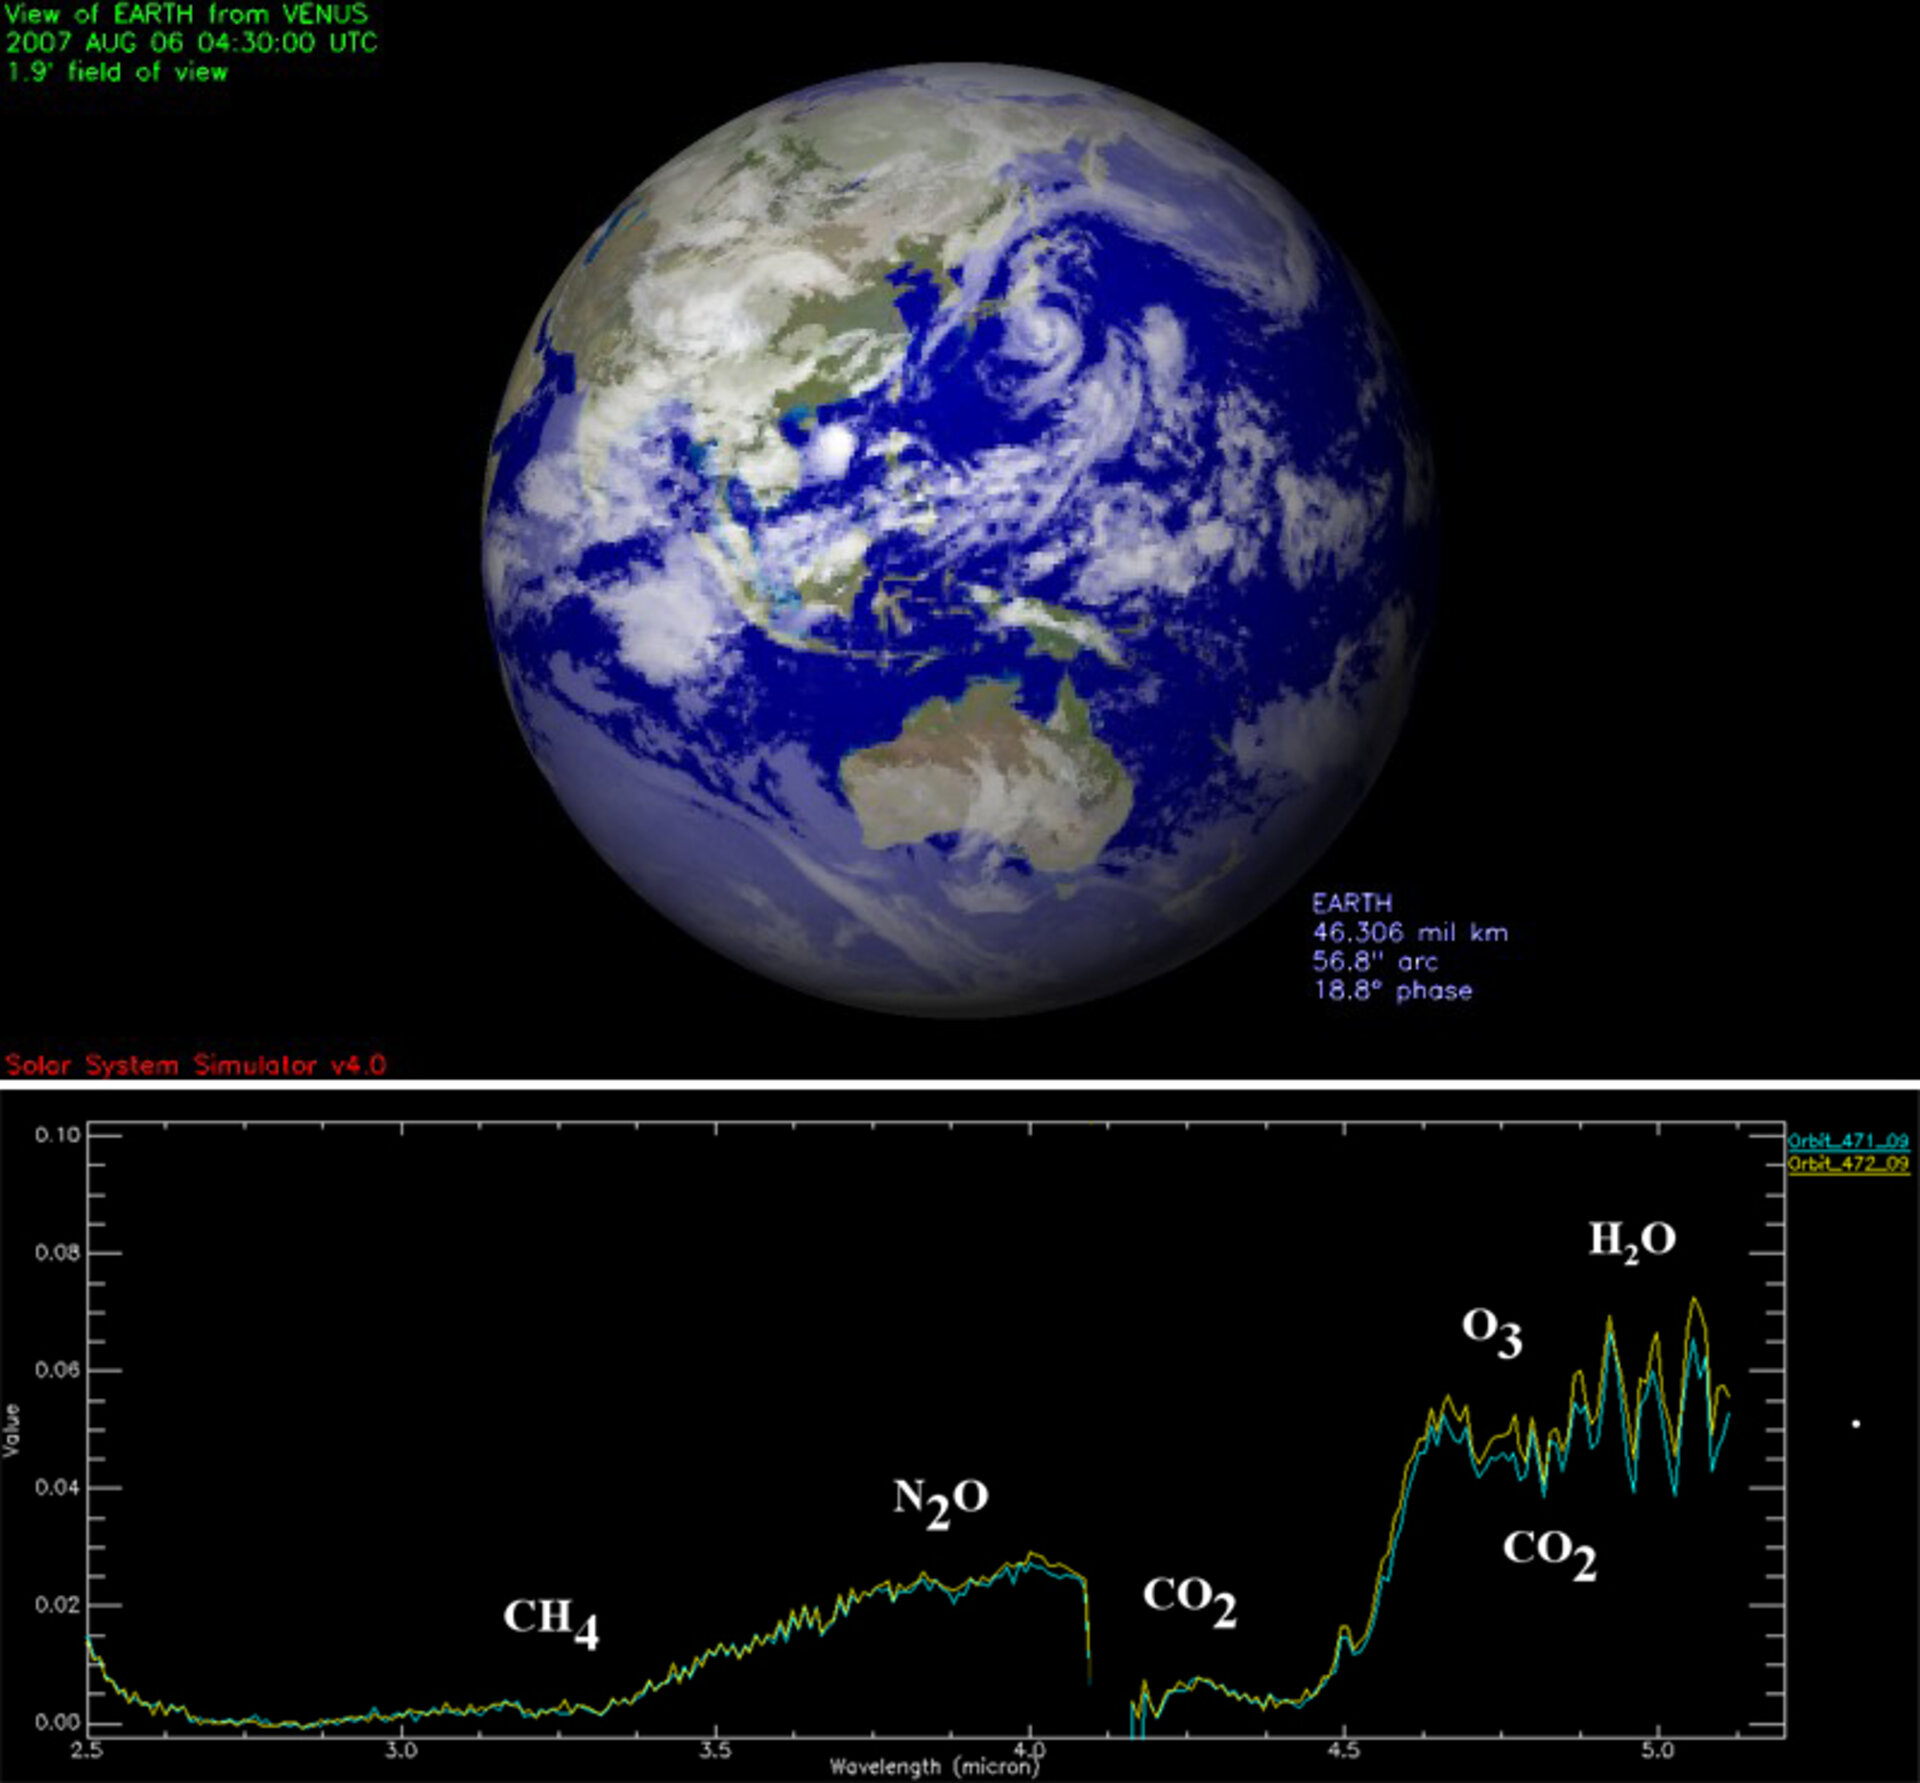 Molecole dell'atomosfera terrestre individuate dalla sonda Venus Express